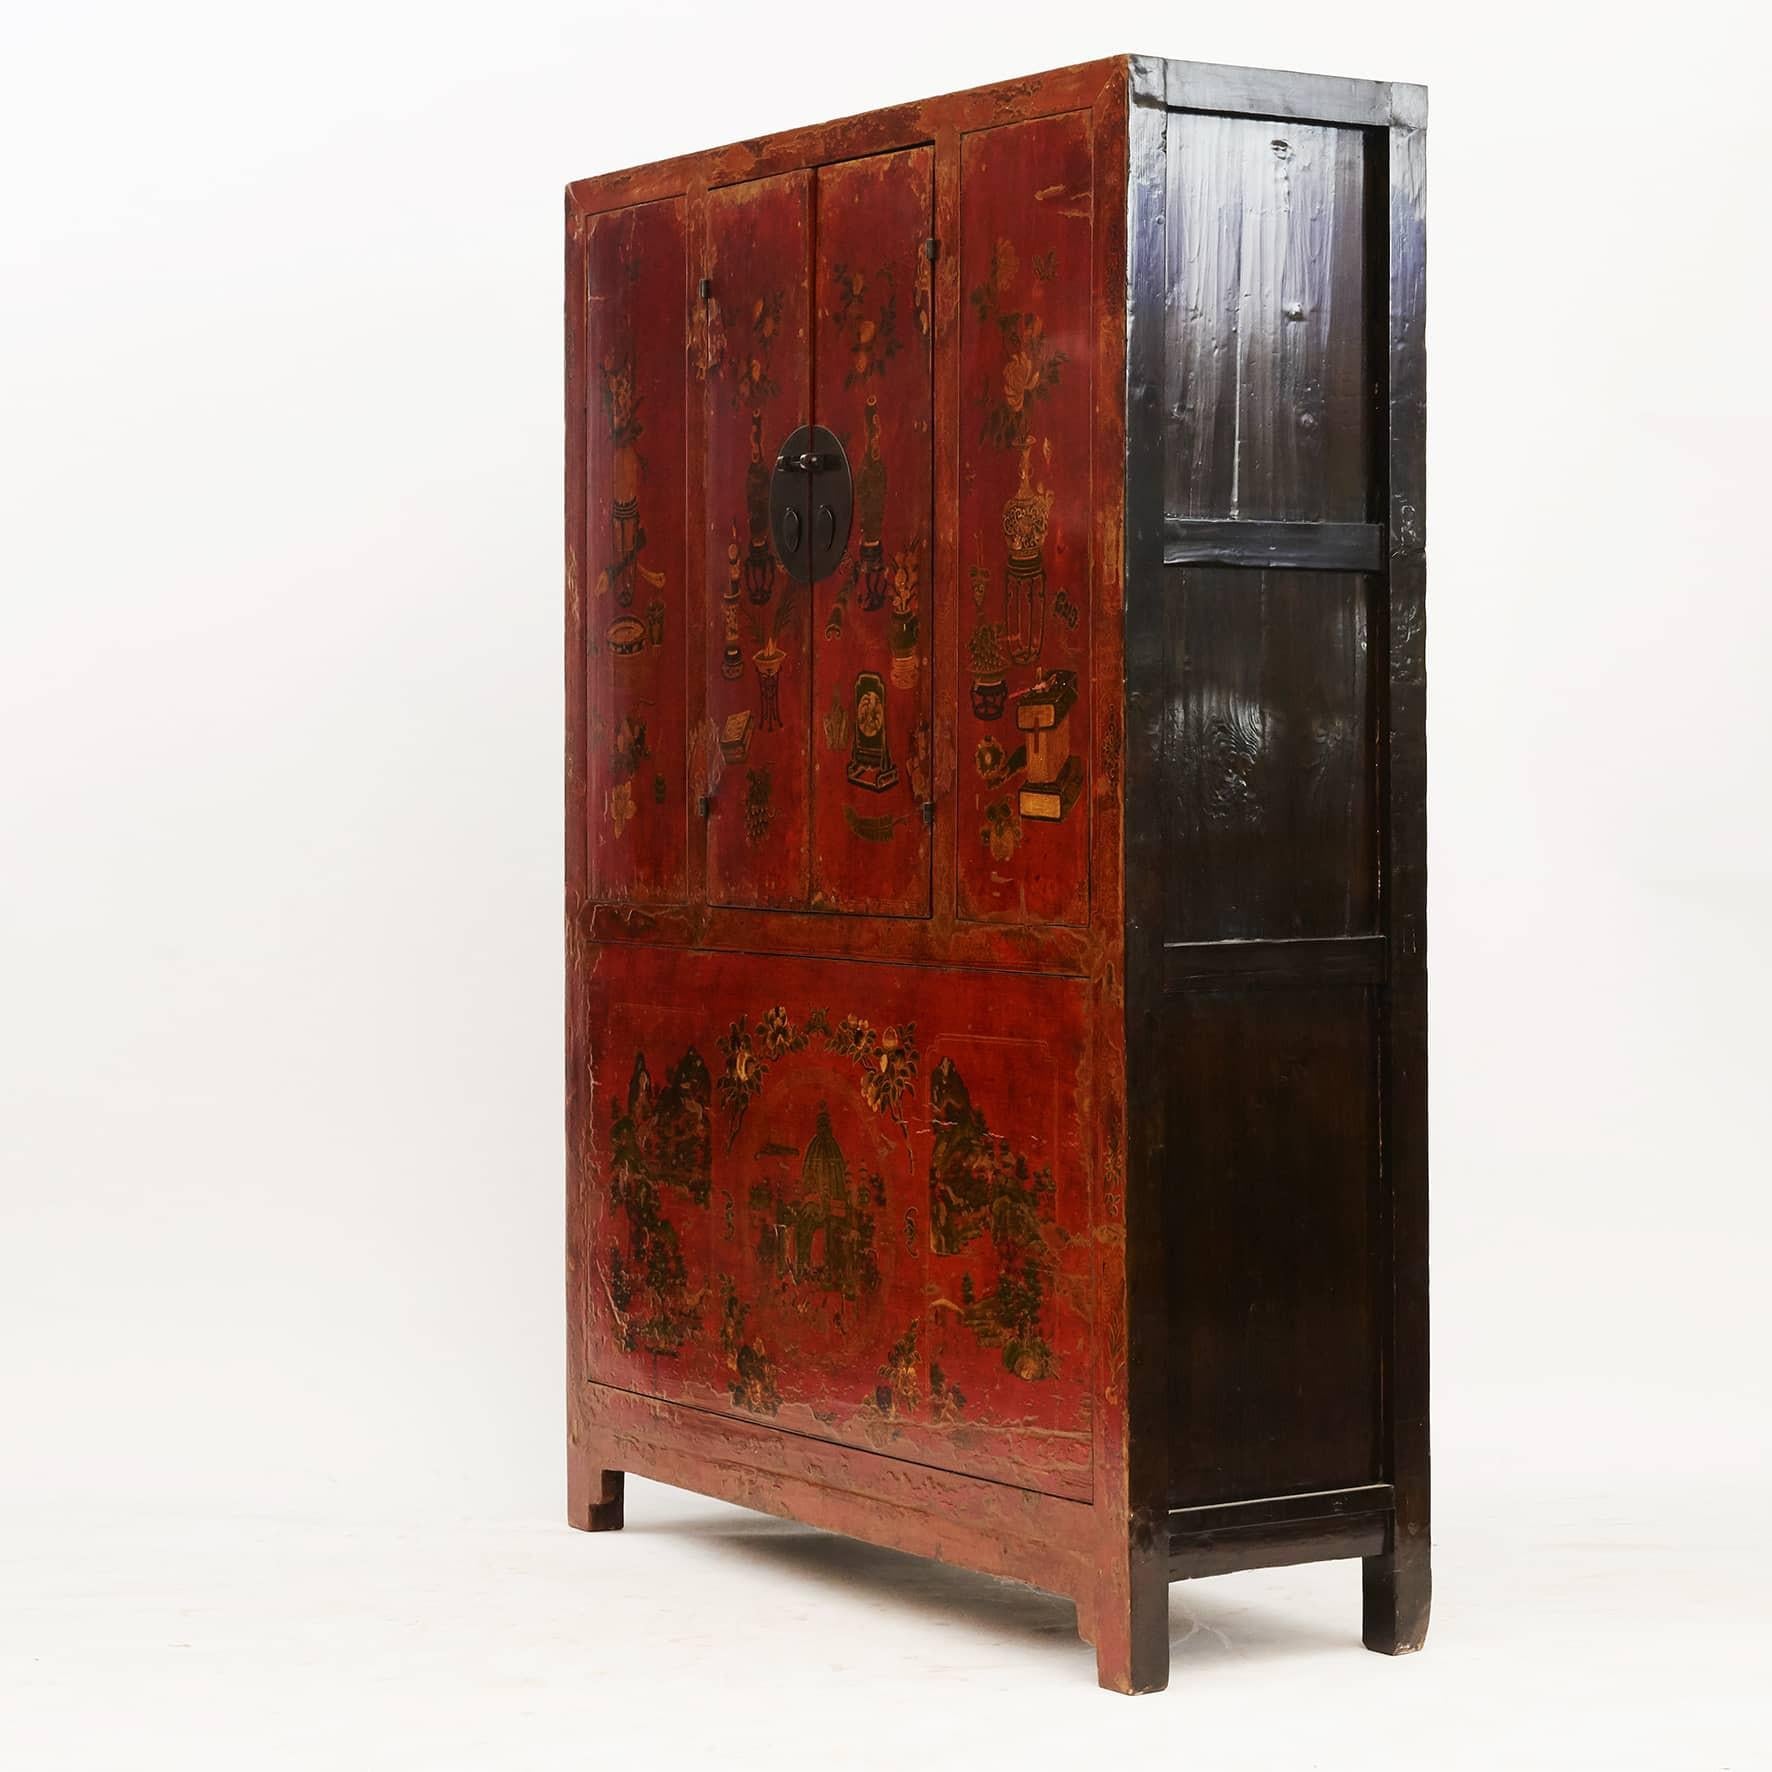 Seltener Schrank aus der Qing-Dynastie mit gut erhaltenen Originaldekorationen.

Roter Grundlack mit polychromen Verzierungen, schwarzer Lack an den Seiten.
Oberer Teil mit zwei Paneeltüren, die reichlich mit reizvollen dekorativen Motiven verziert